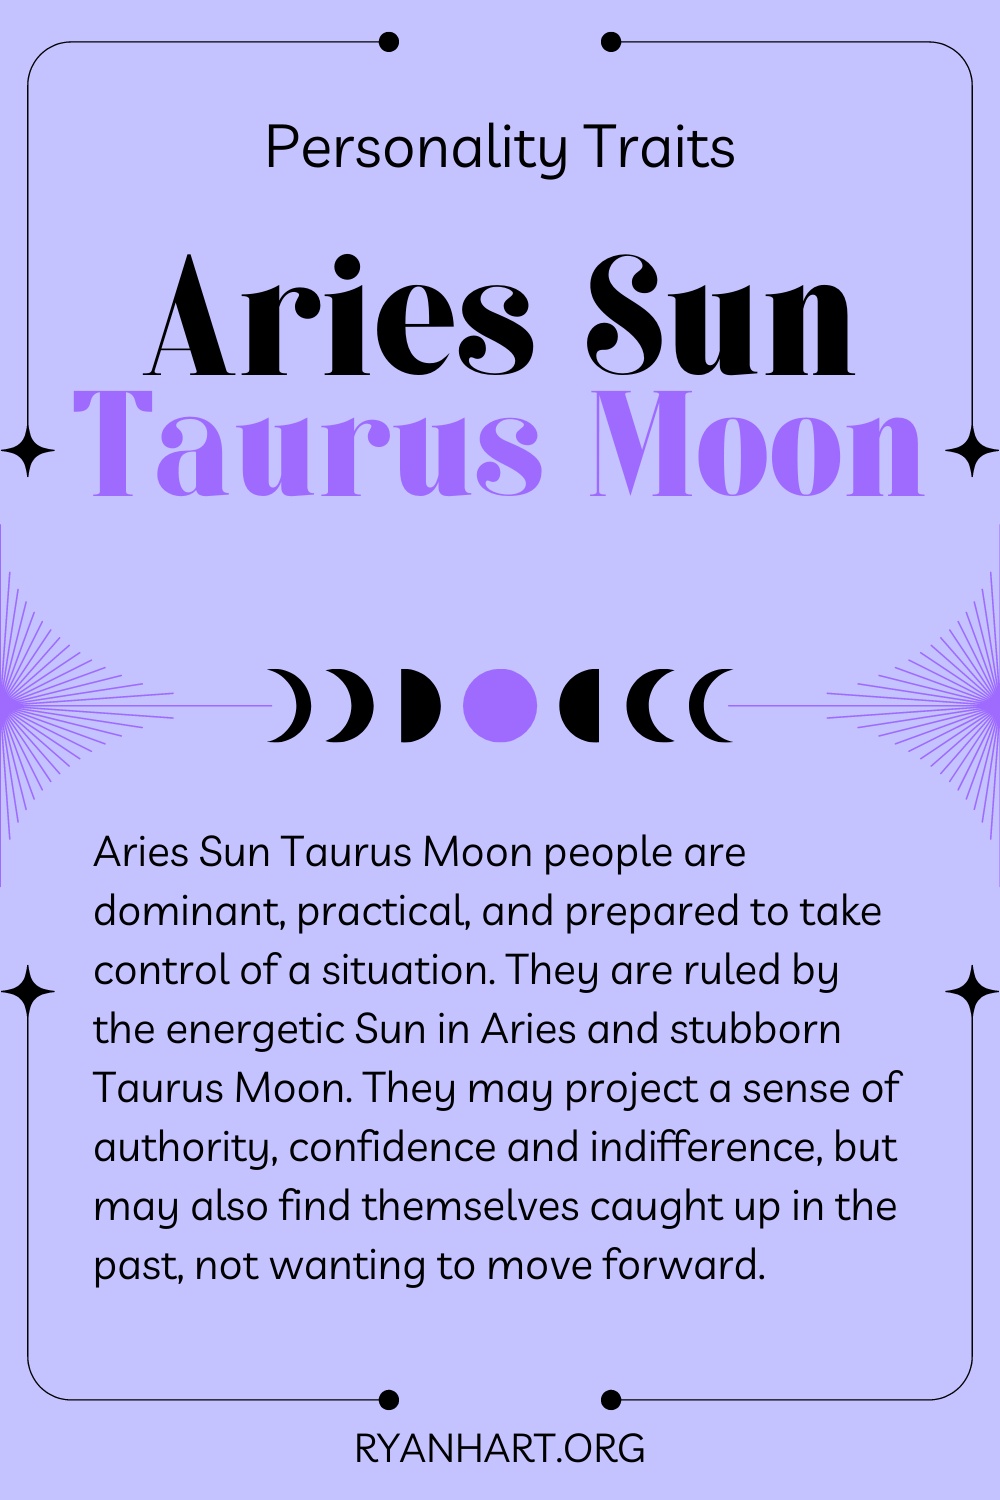  Tilmaamaha shakhsi ahaaneed ee Aries Sun Taurus